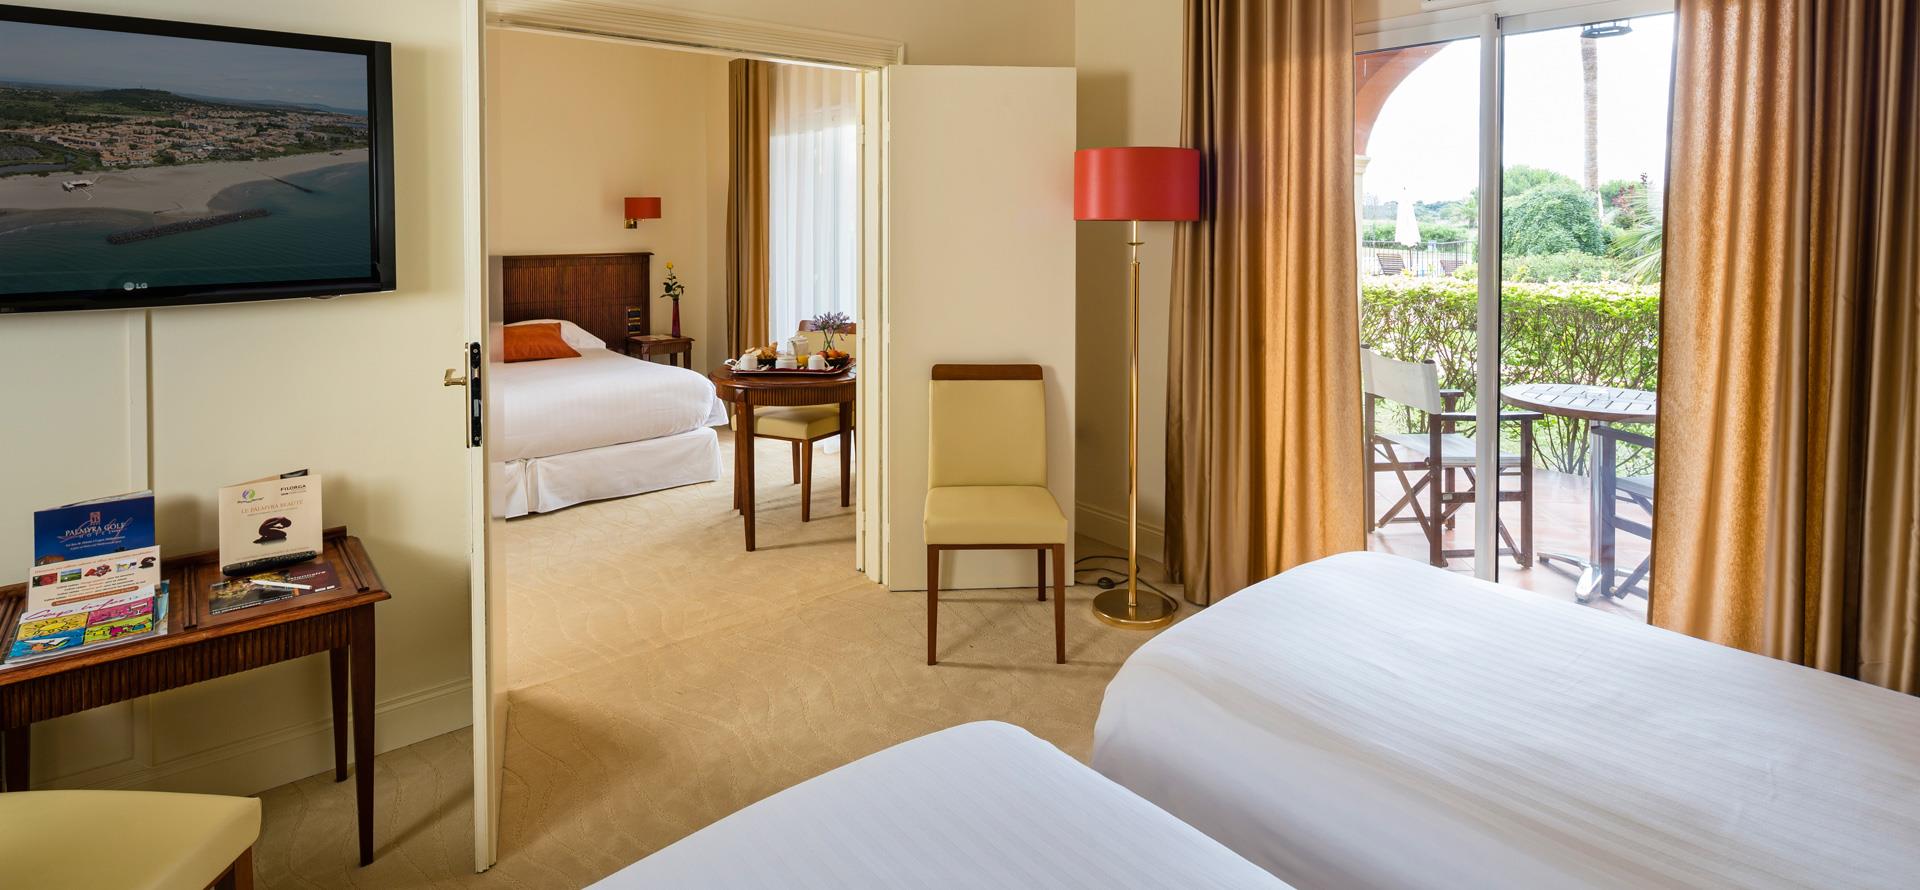 Chambres communicantes du Palmyra Golf hôtel au Cap d’Agde, composées de deux chambres confort 2 lits une place et 1 lit 2 places avec terrasse privative avec petit déjeuner servi en chambre.